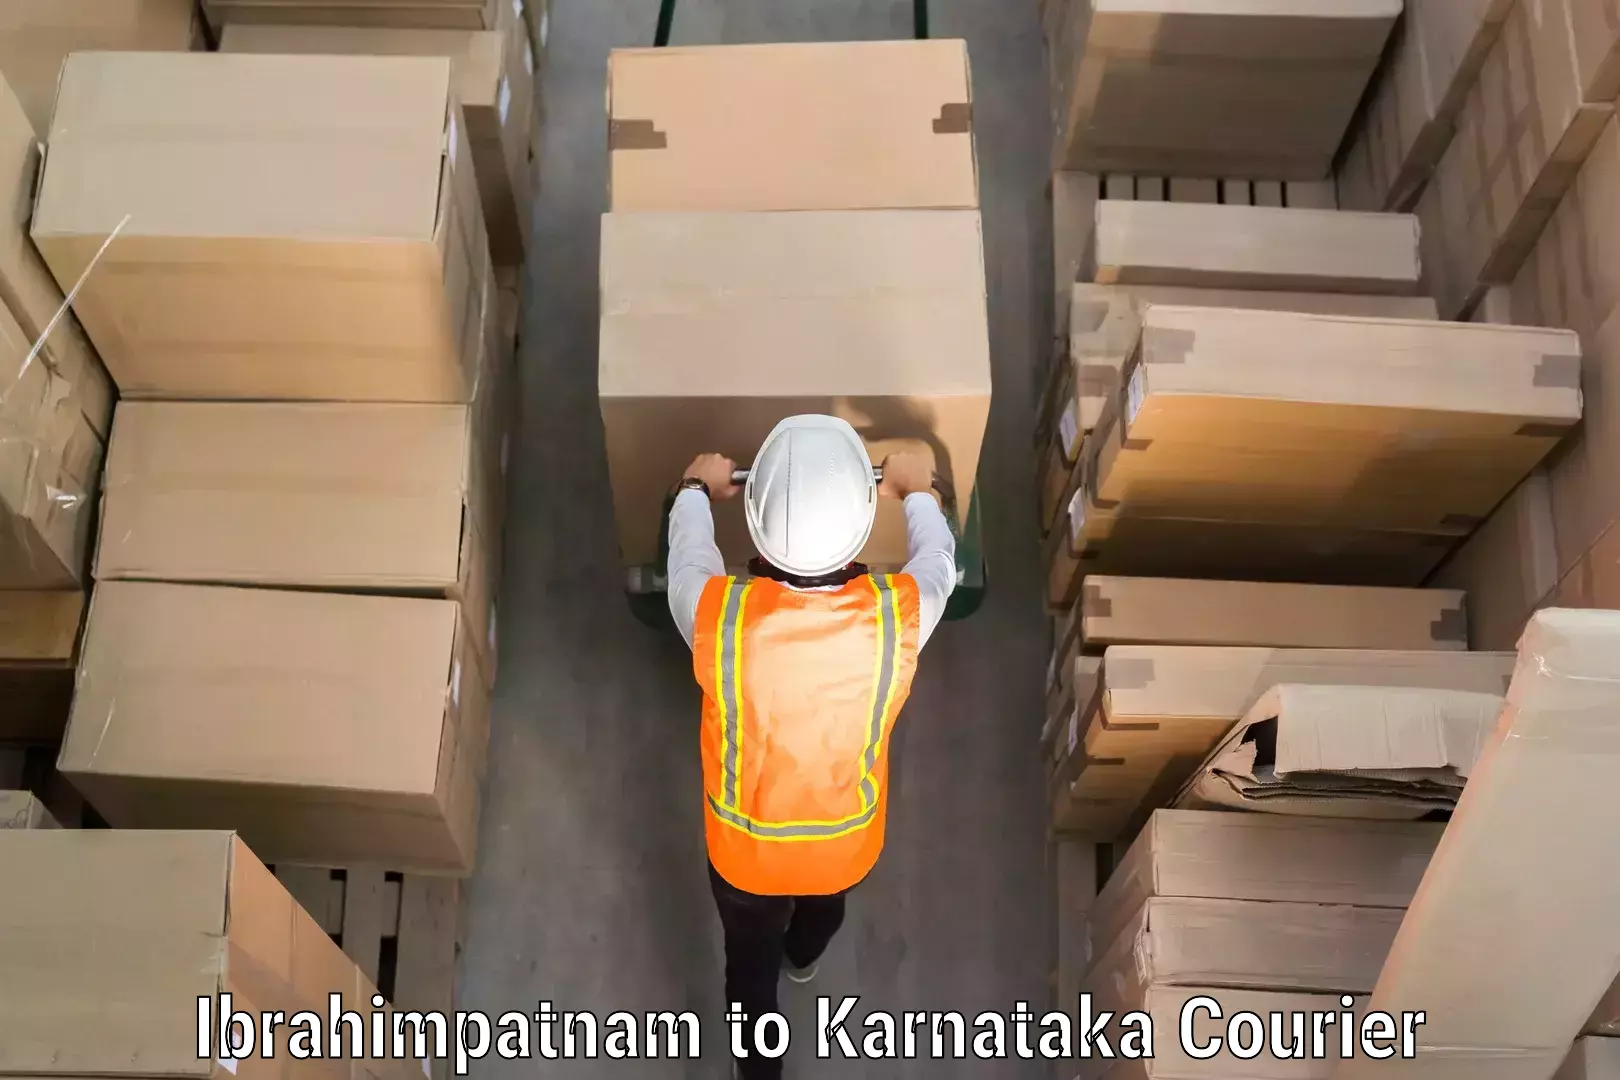 Baggage shipping experts Ibrahimpatnam to Kanjarakatte